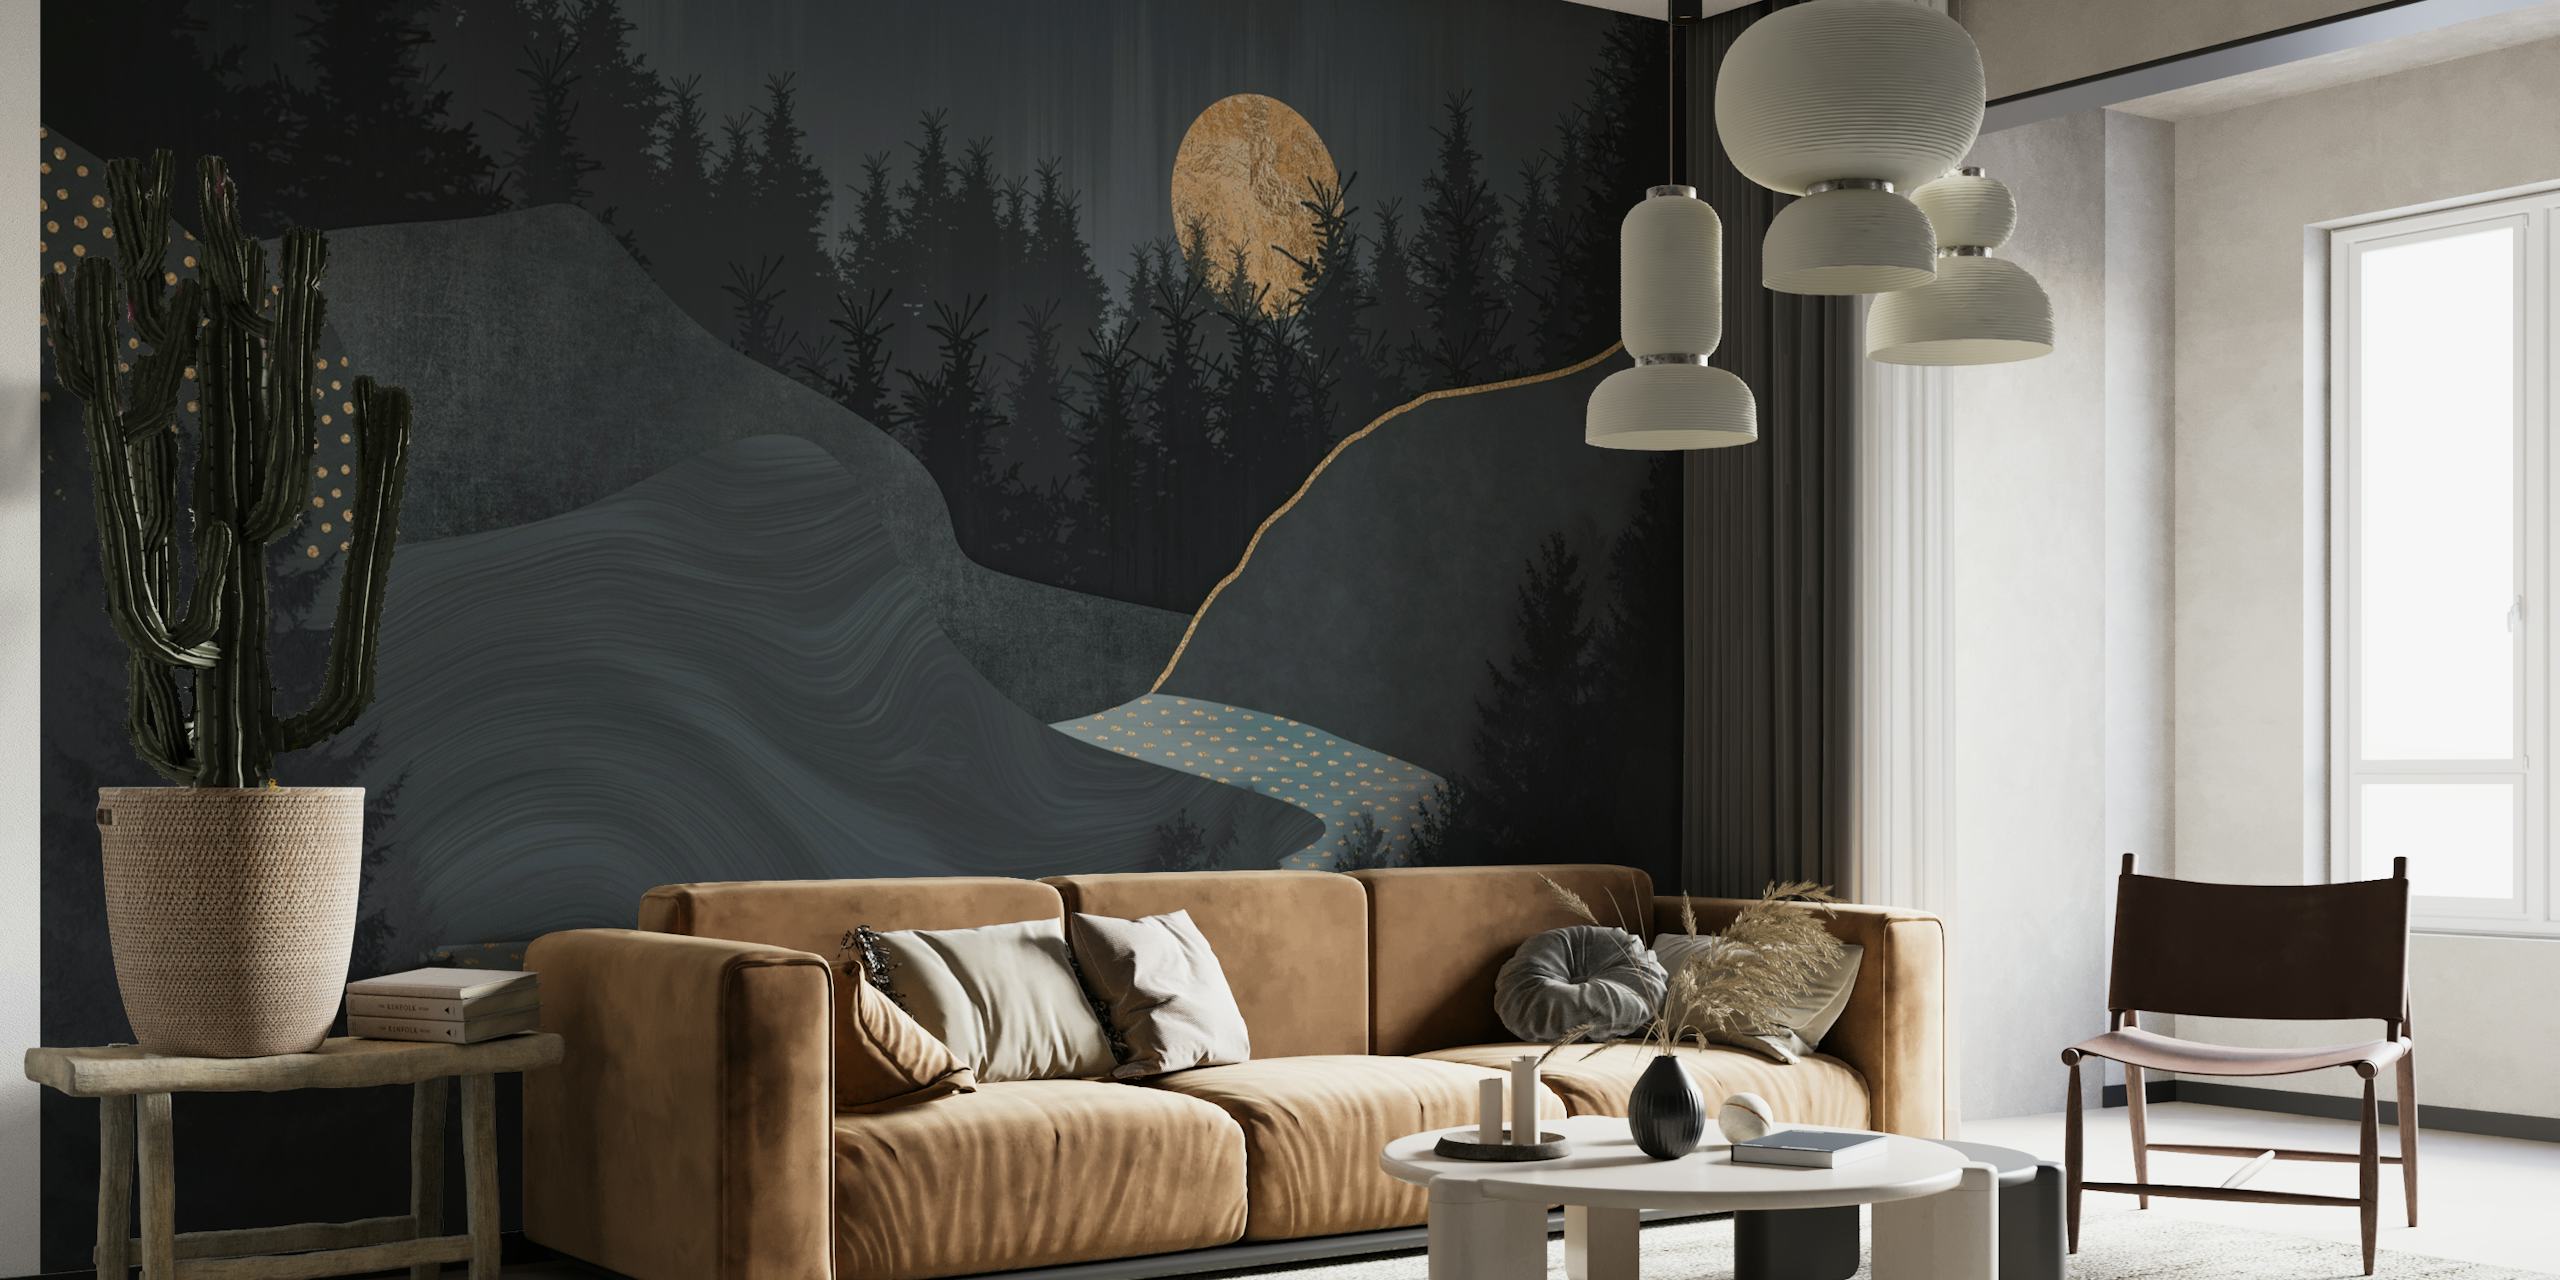 Midnight Forest Full Moon Landscape wallpaper